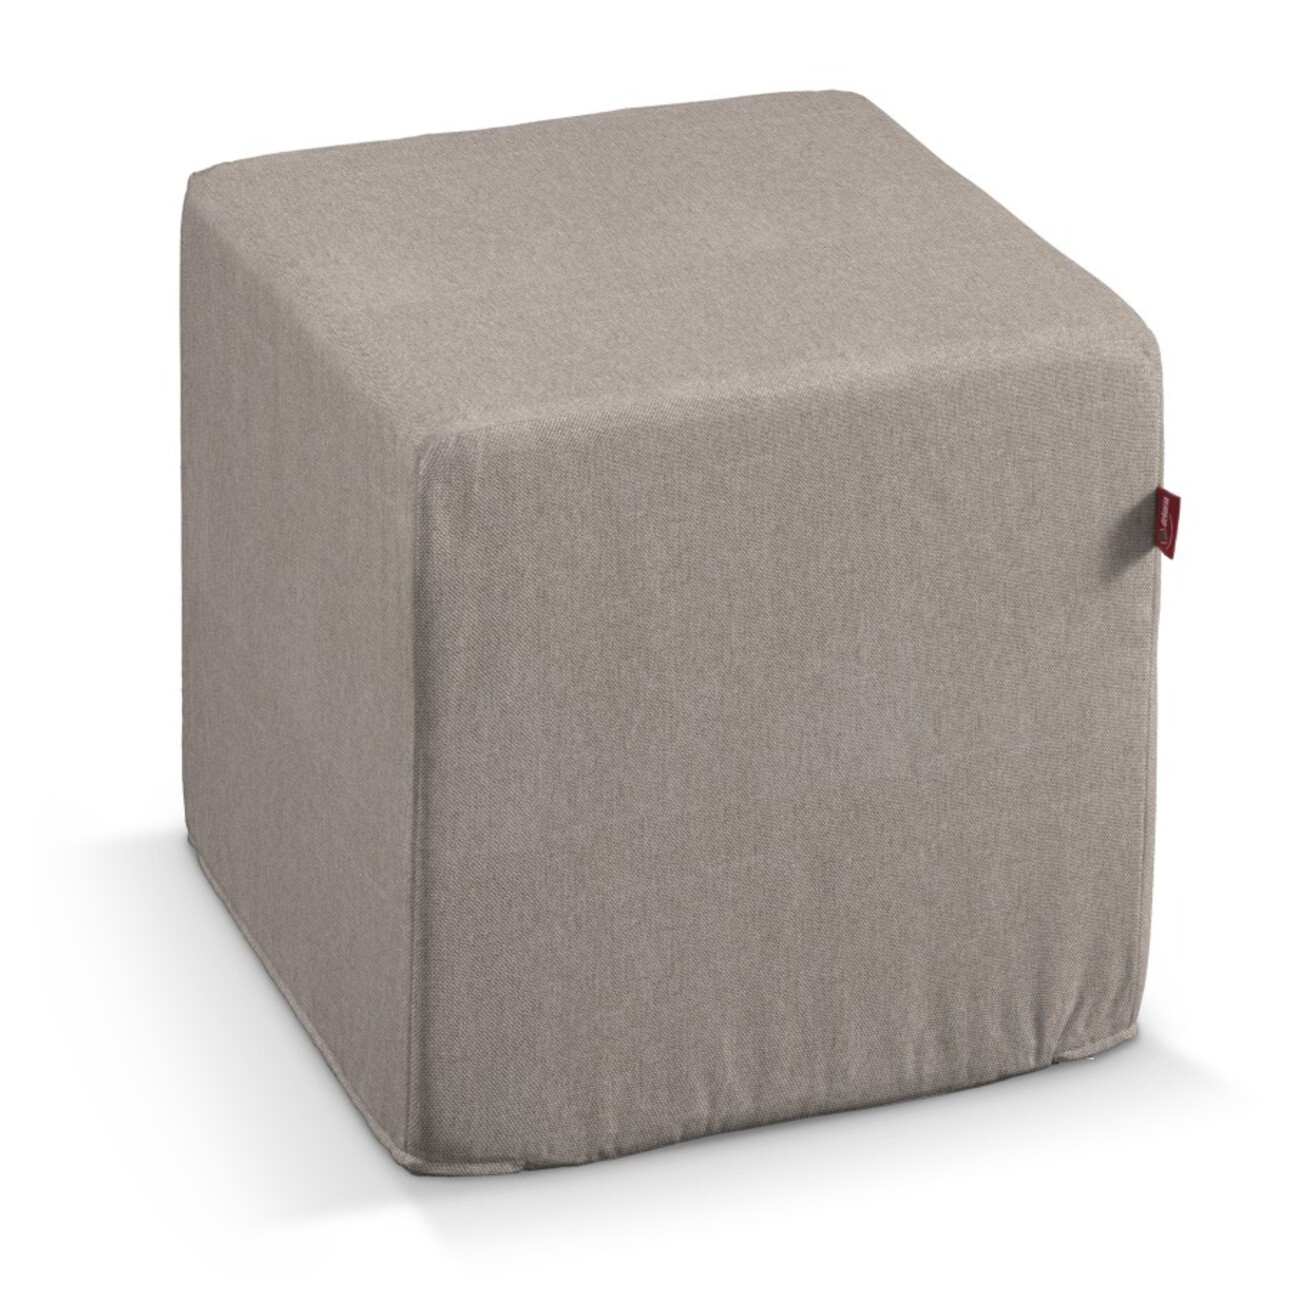 Bezug für Sitzwürfel, beige-grau, Bezug für Sitzwürfel 40 x 40 x 40 cm, Etn günstig online kaufen